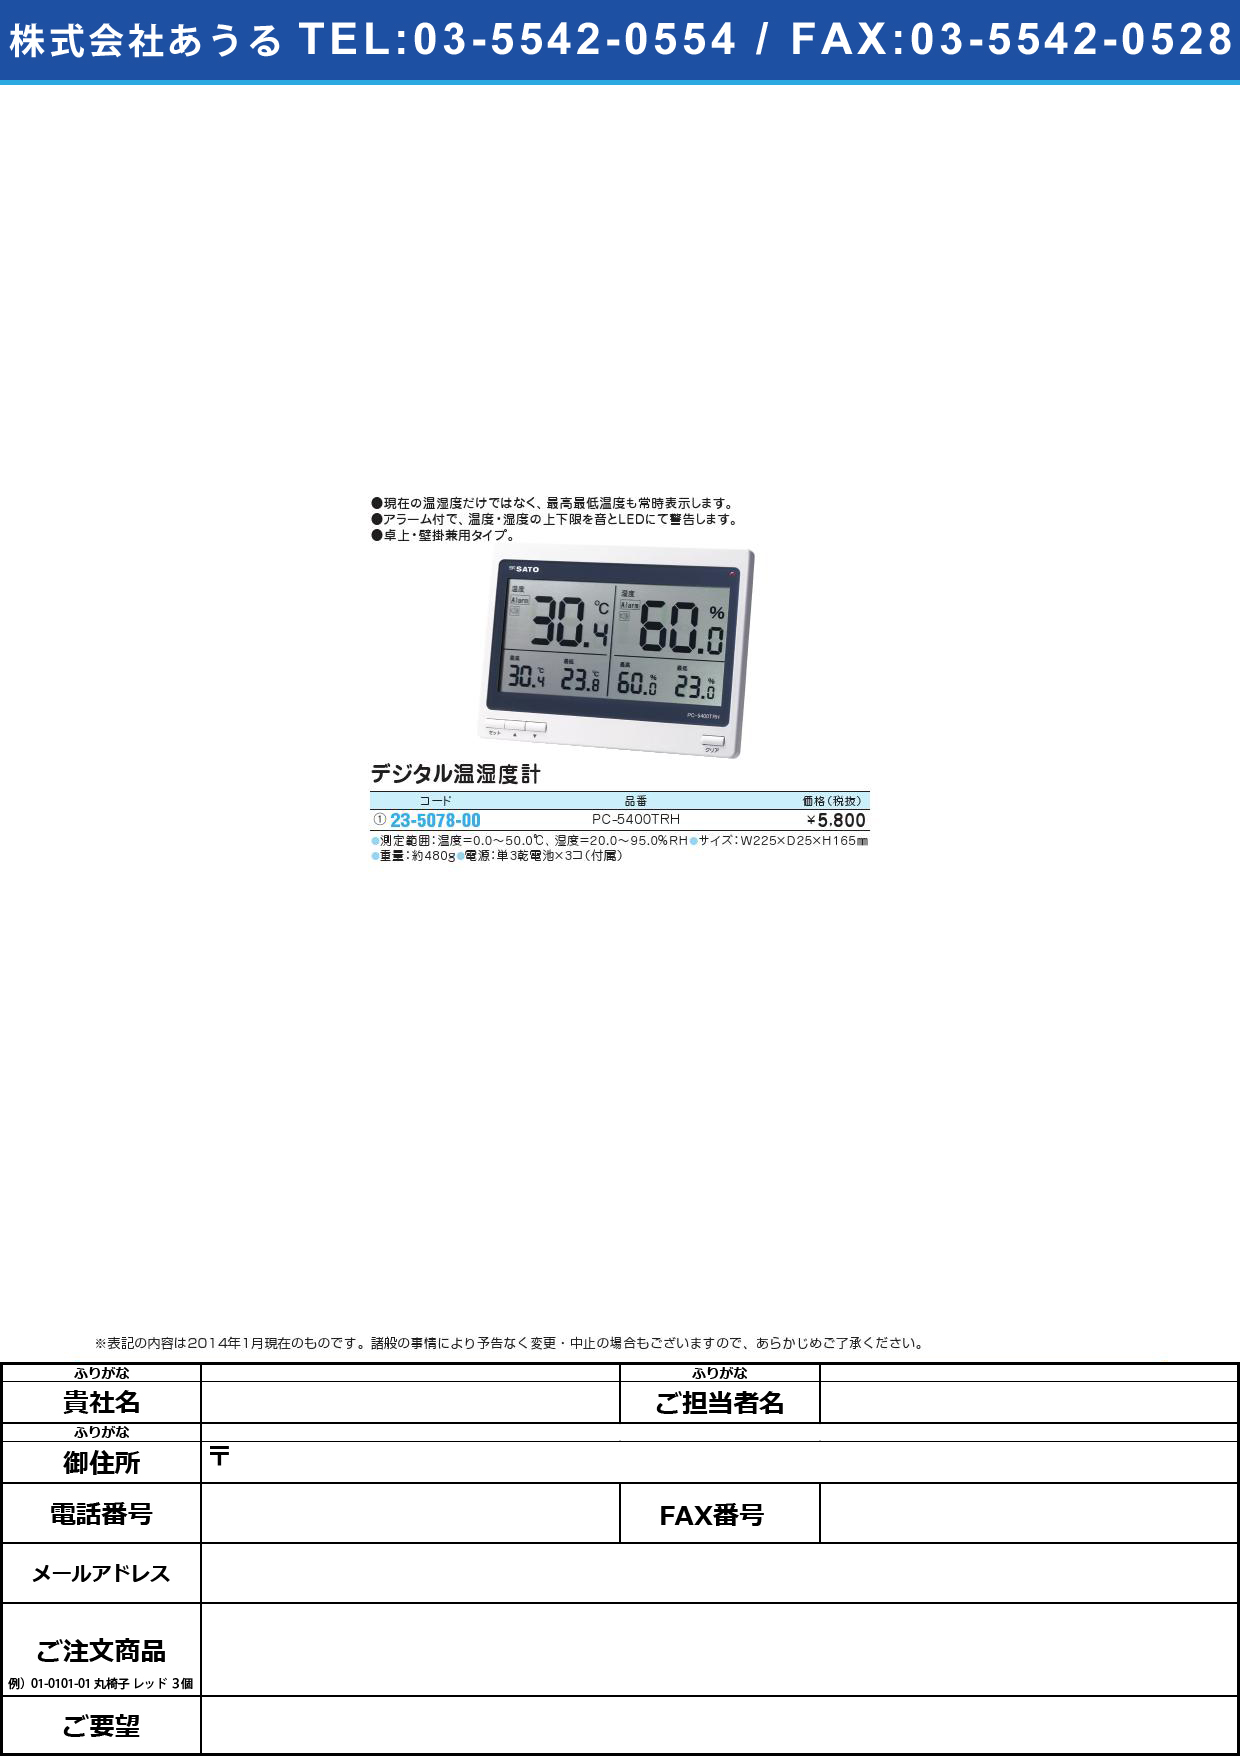 (23-5078-00)デジタル温湿度計 ﾃﾞｼﾞﾀﾙｵﾝｼﾂﾄﾞｹｲ(23-5078-00)PC-5400TRH【1台単位】【2014年カタログ商品】